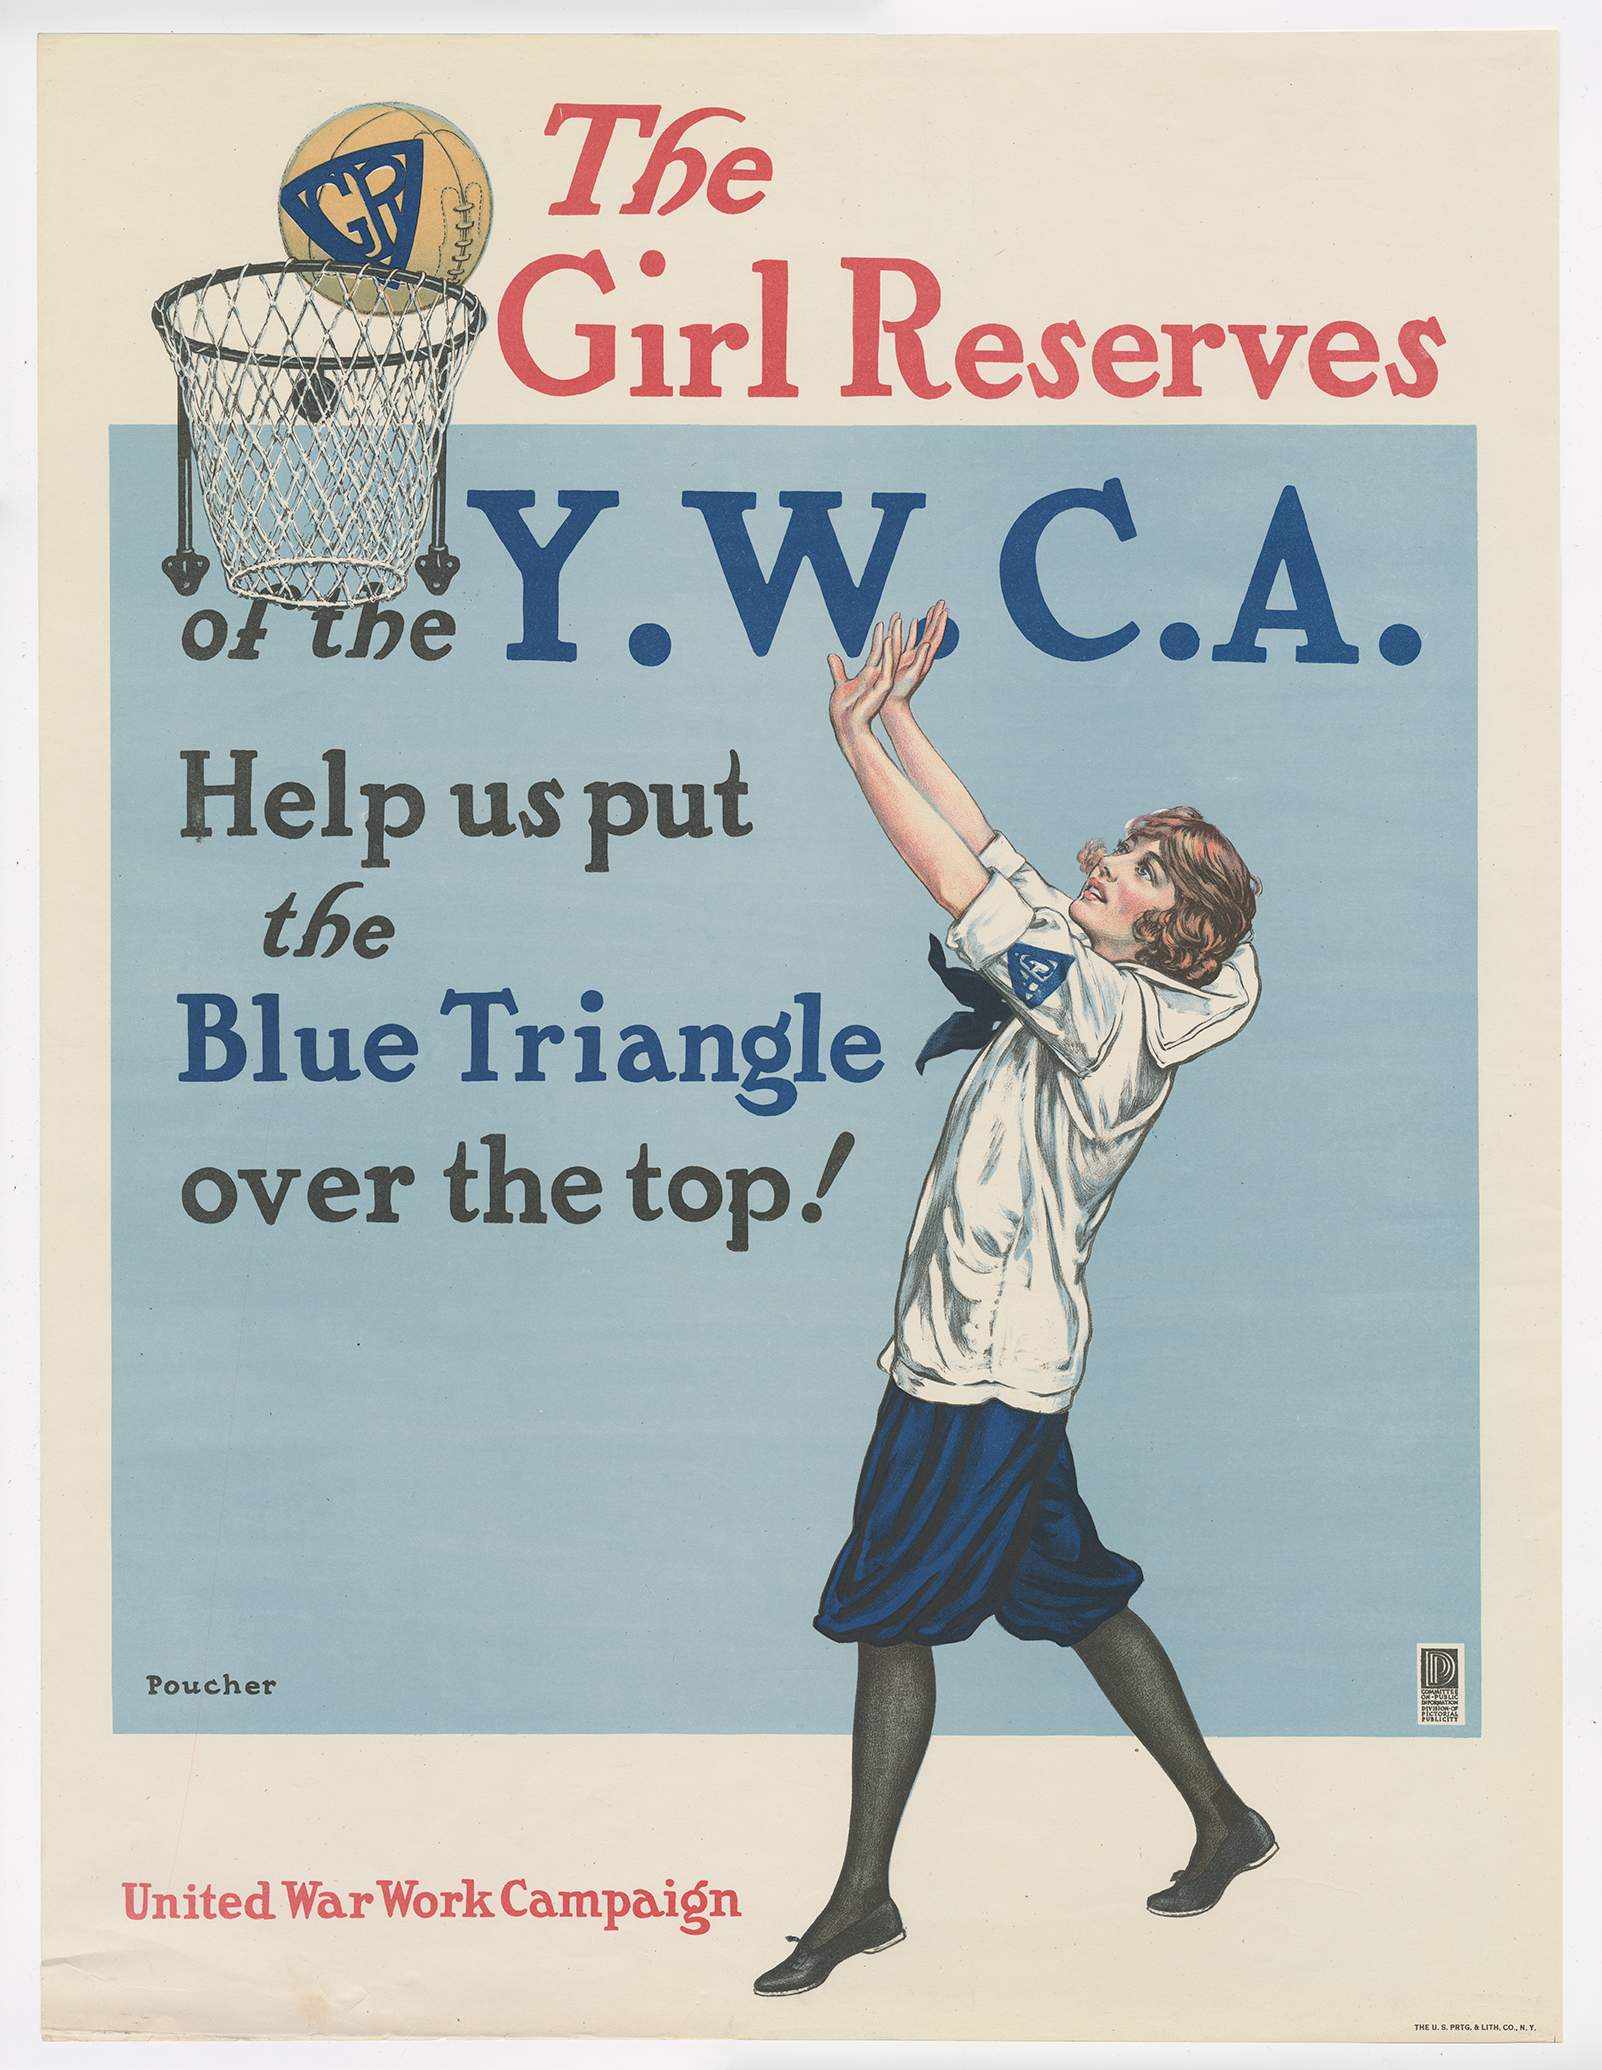 ဘောလုံးကို ဘတ်စကက်ဘောကွင်းထဲသို့ ပစ်ထည့်နေသည့် အဖြူရောင် သင်္ဘောသားဝတ်စုံဝတ် မိန်းကလေးတစ်ဦး၏ ပုံနှင့် ပိုစတာ။ စာသား- 'YWCA ၏ မိန်းကလေး အရန်ငွေ/ အပြာရောင်တြိဂံကို ထိပ်တွင် ထားပေးပါ။'